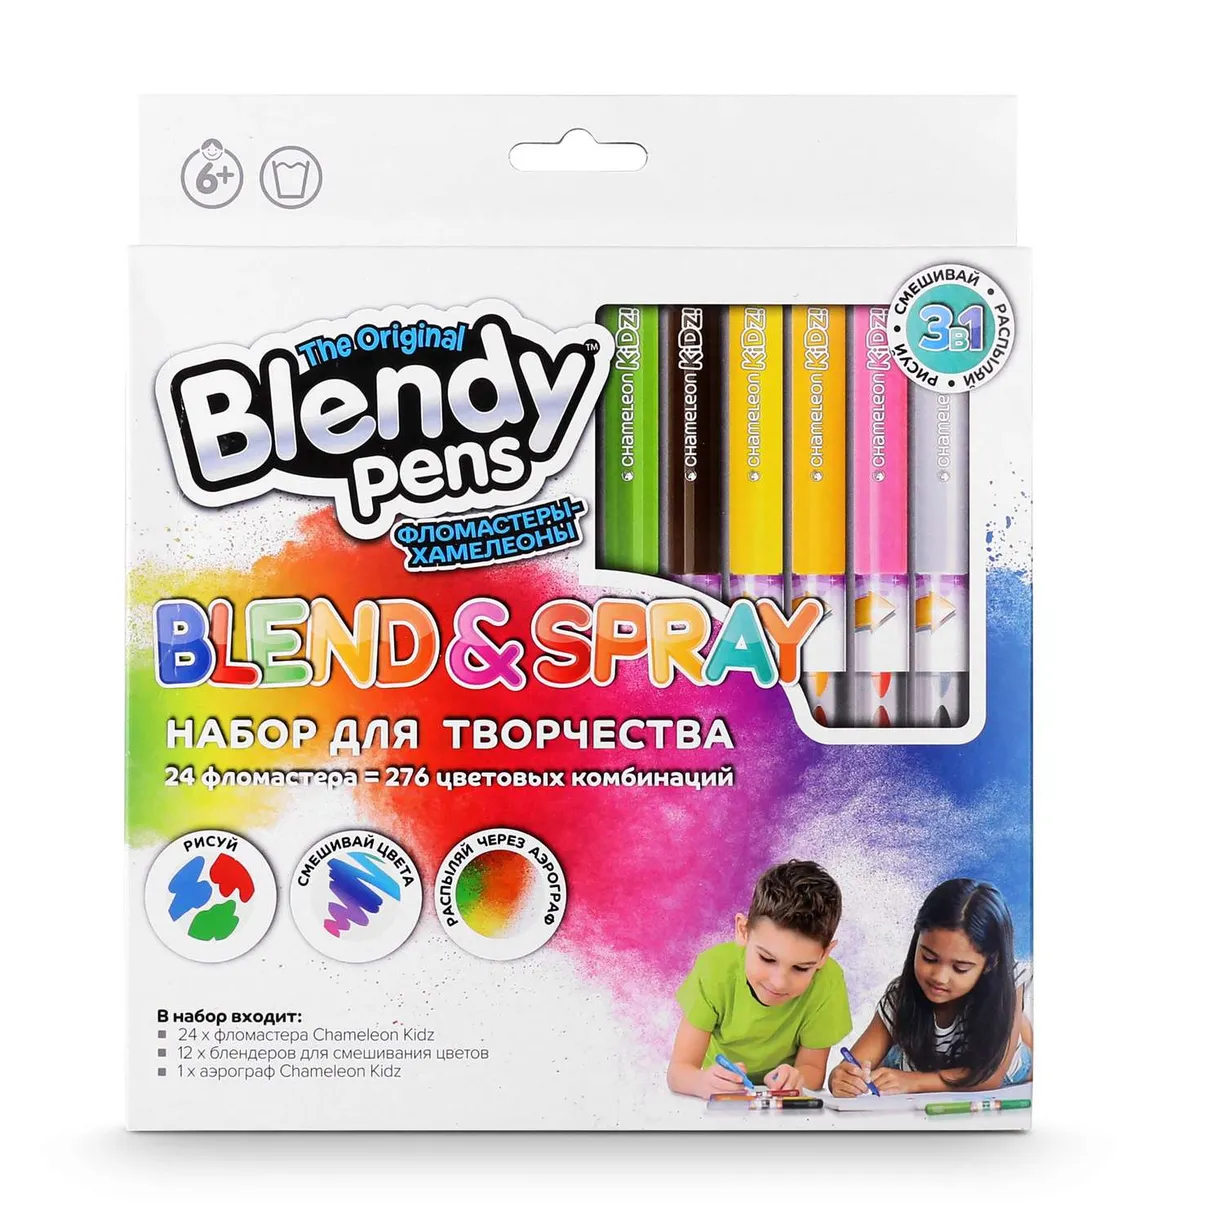 Набор фломастеров Blendy pens 24 шт фломастеры 6 цветов на блистере вентилируемый колпачок